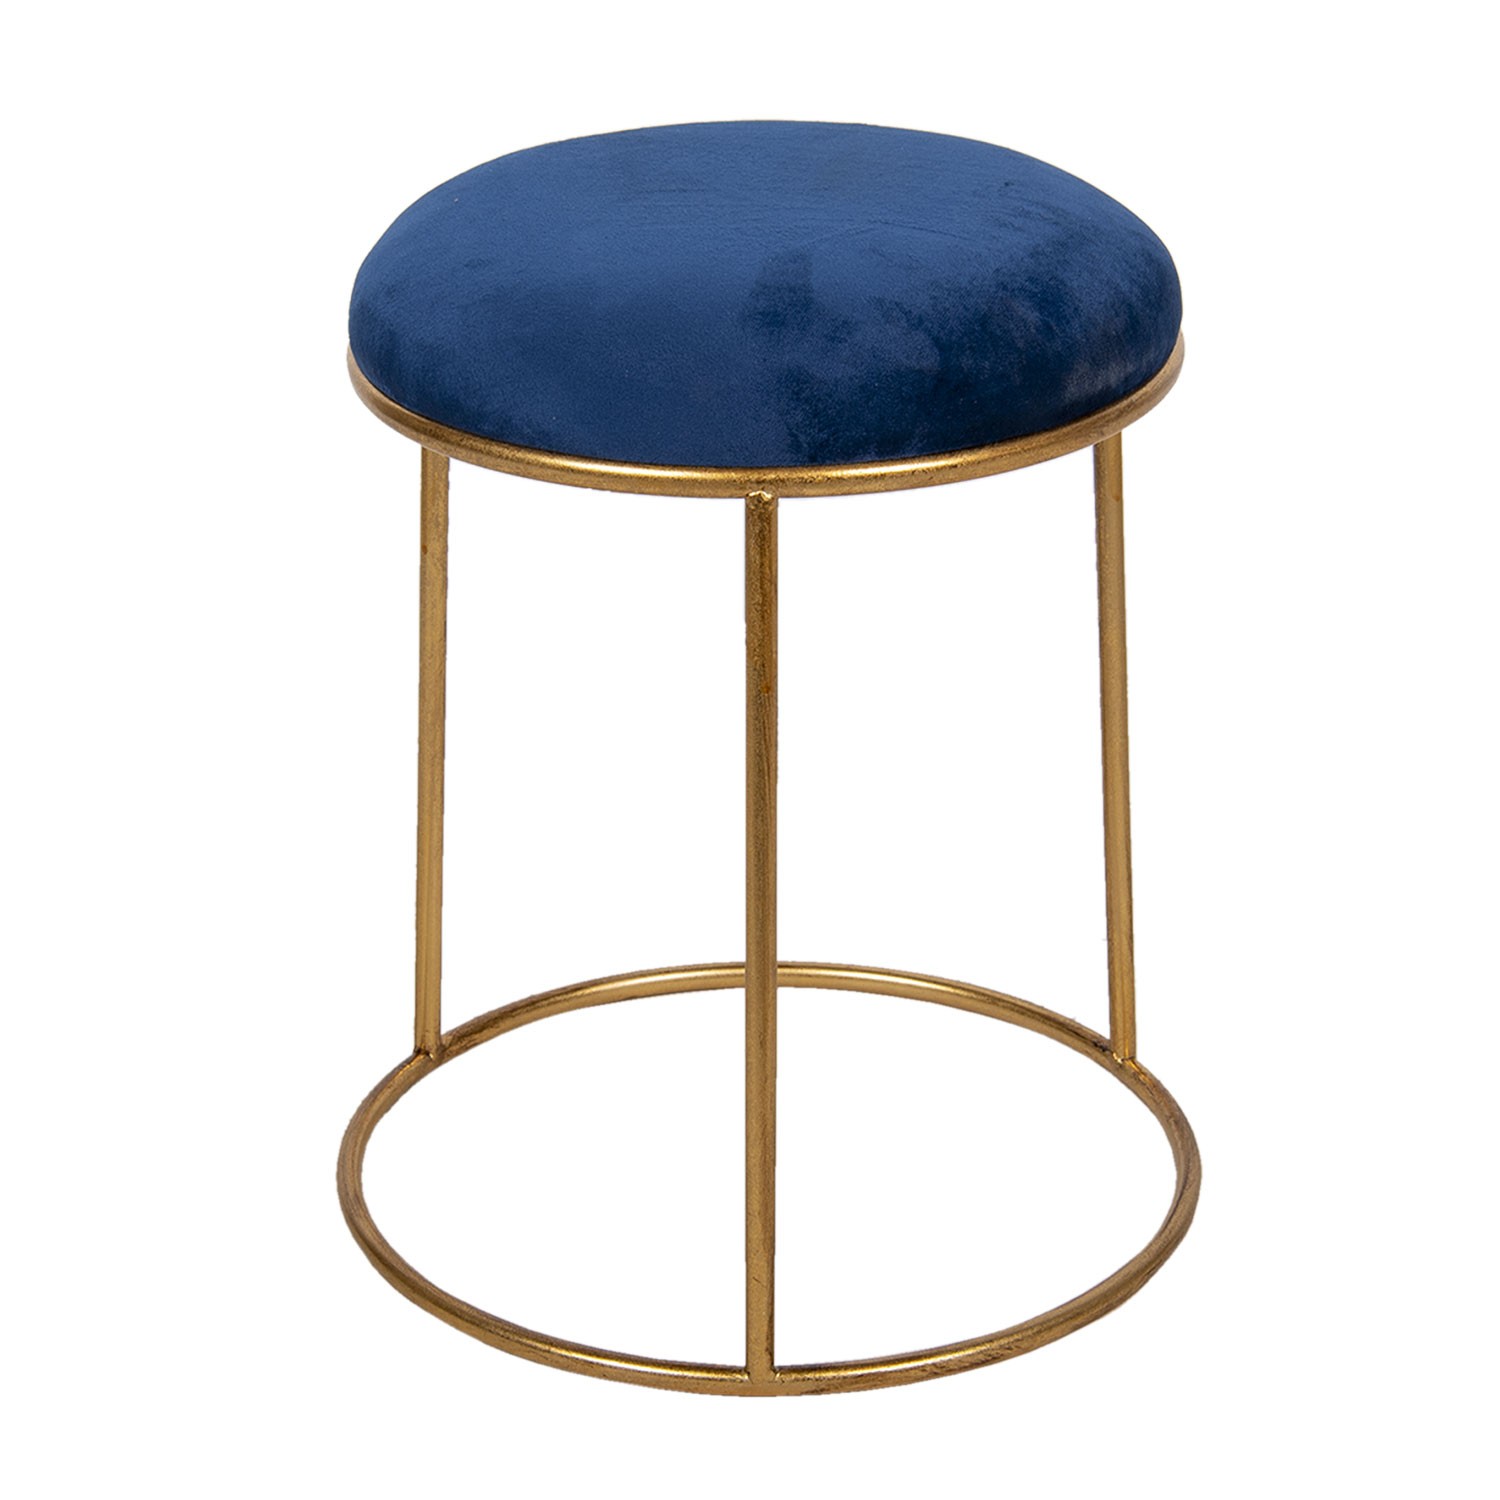 Zlatá kovová stolička s modrým sametovým sedákem - Ø 42*48 cm Clayre & Eef